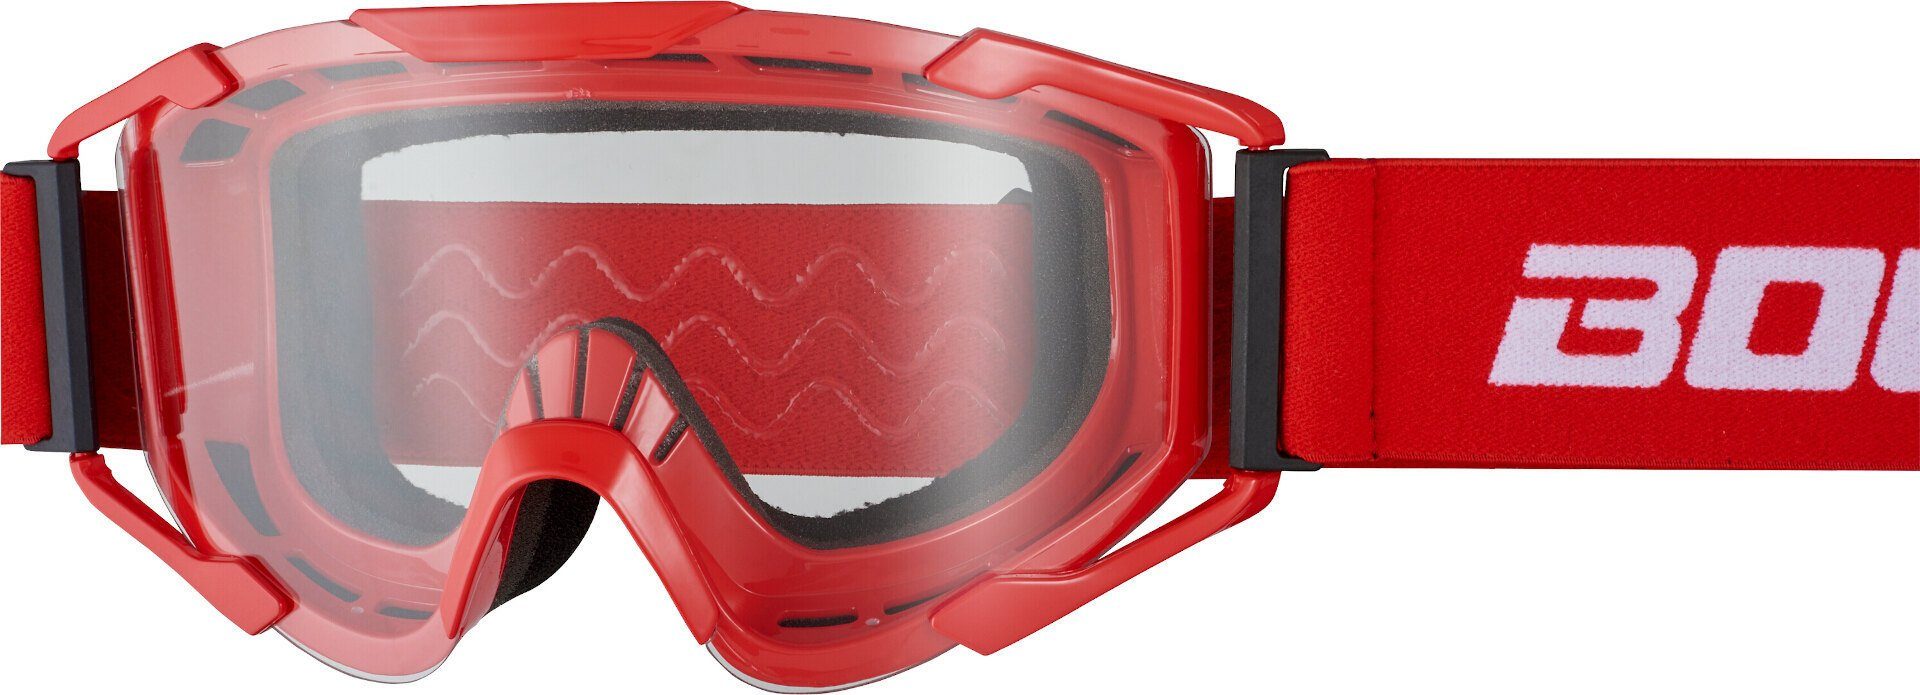 Motocross Red/White Bogotto Brille Motorradbrille B-ST